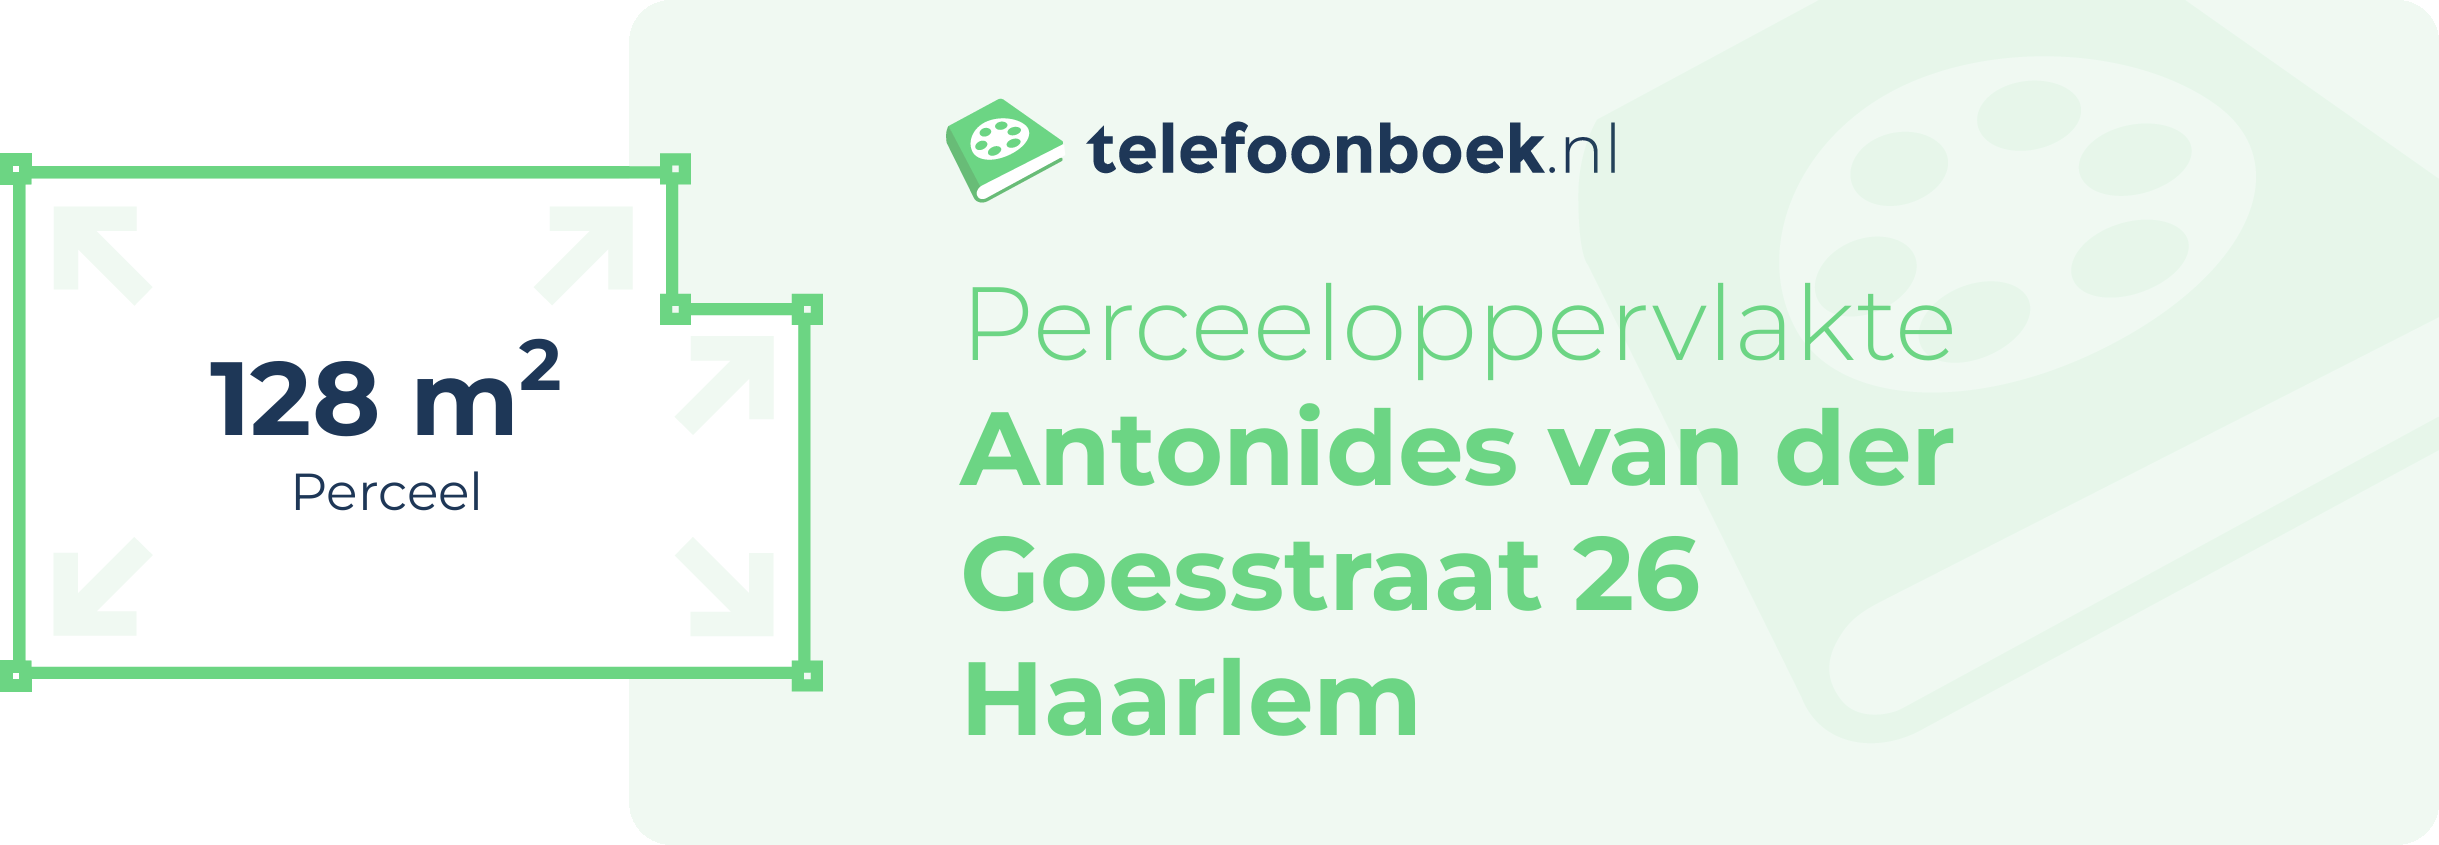 Perceeloppervlakte Antonides Van Der Goesstraat 26 Haarlem